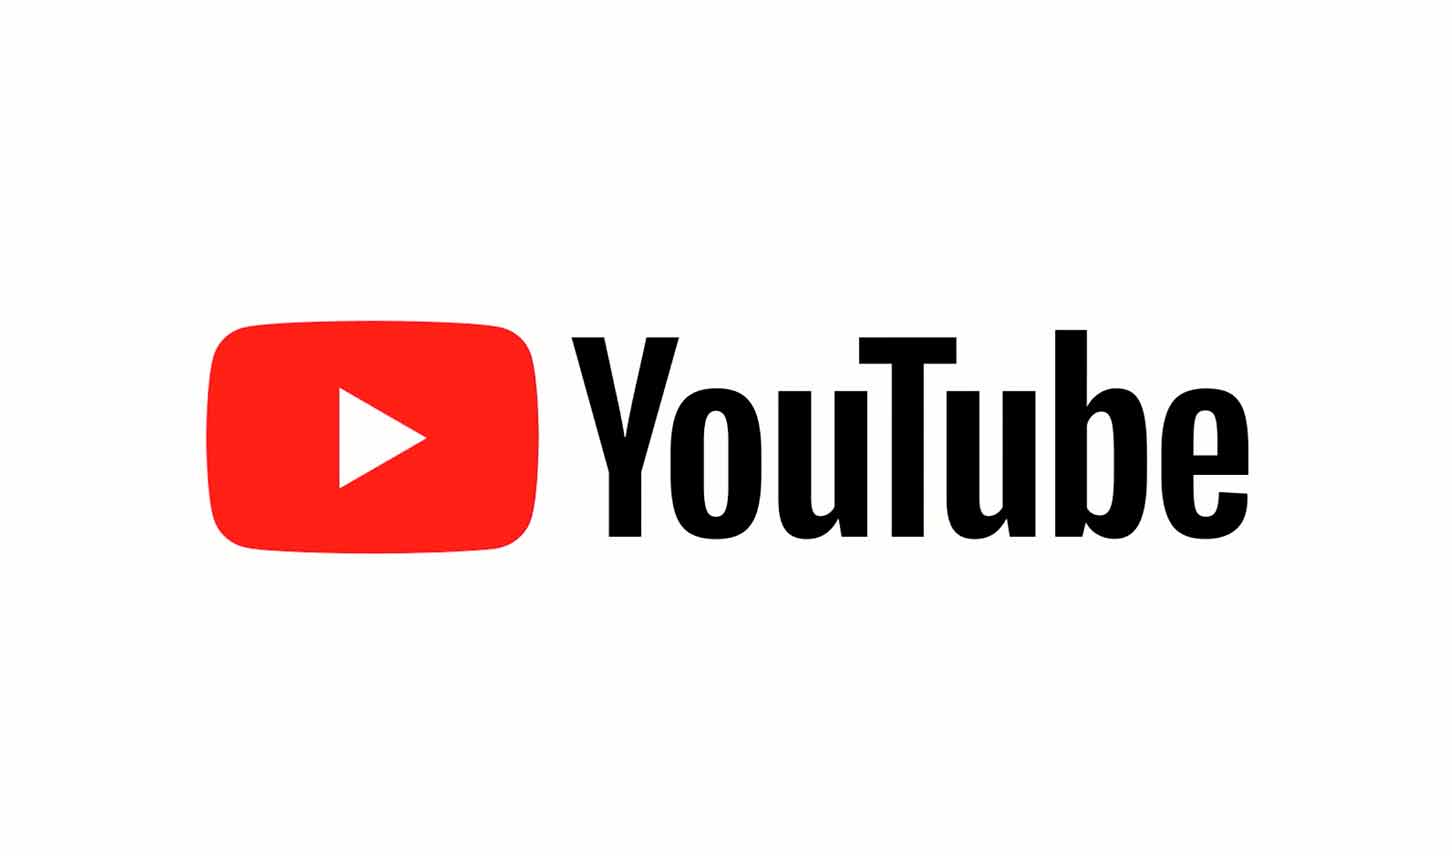 Youtube original logo in HD Wallpaper original, wallpaper 